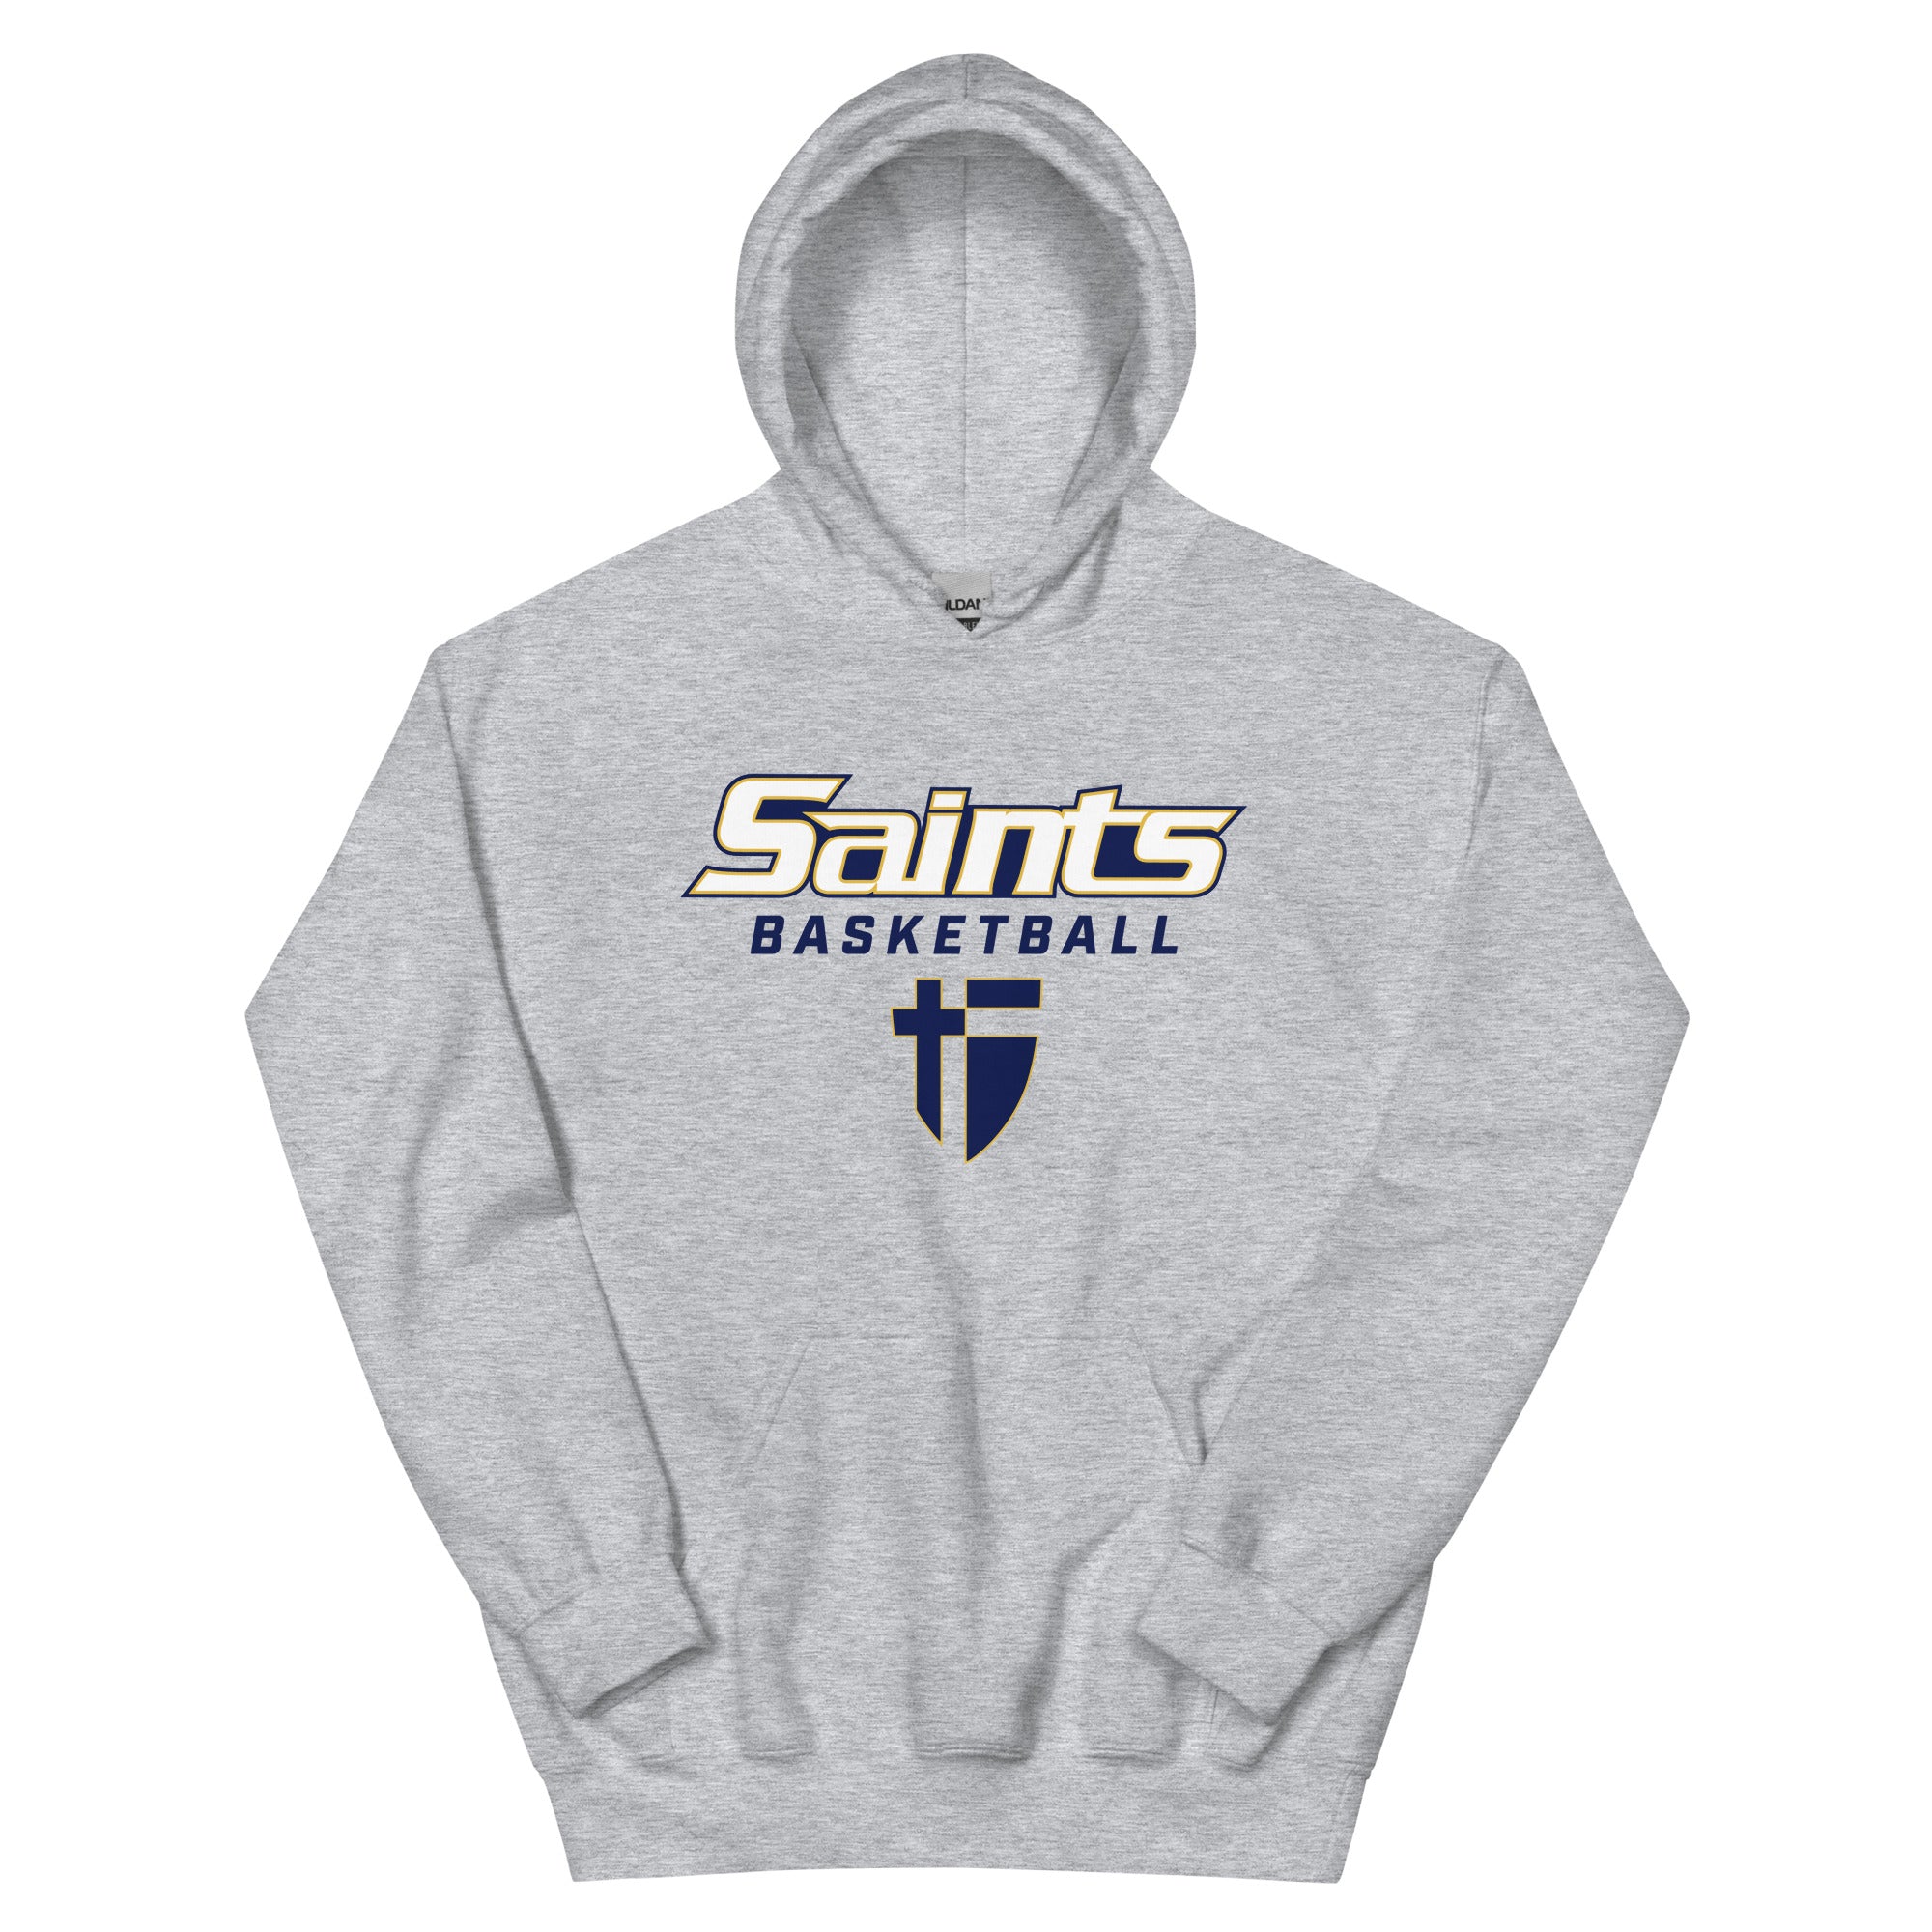 Saints Basketball Unisex Hoodie